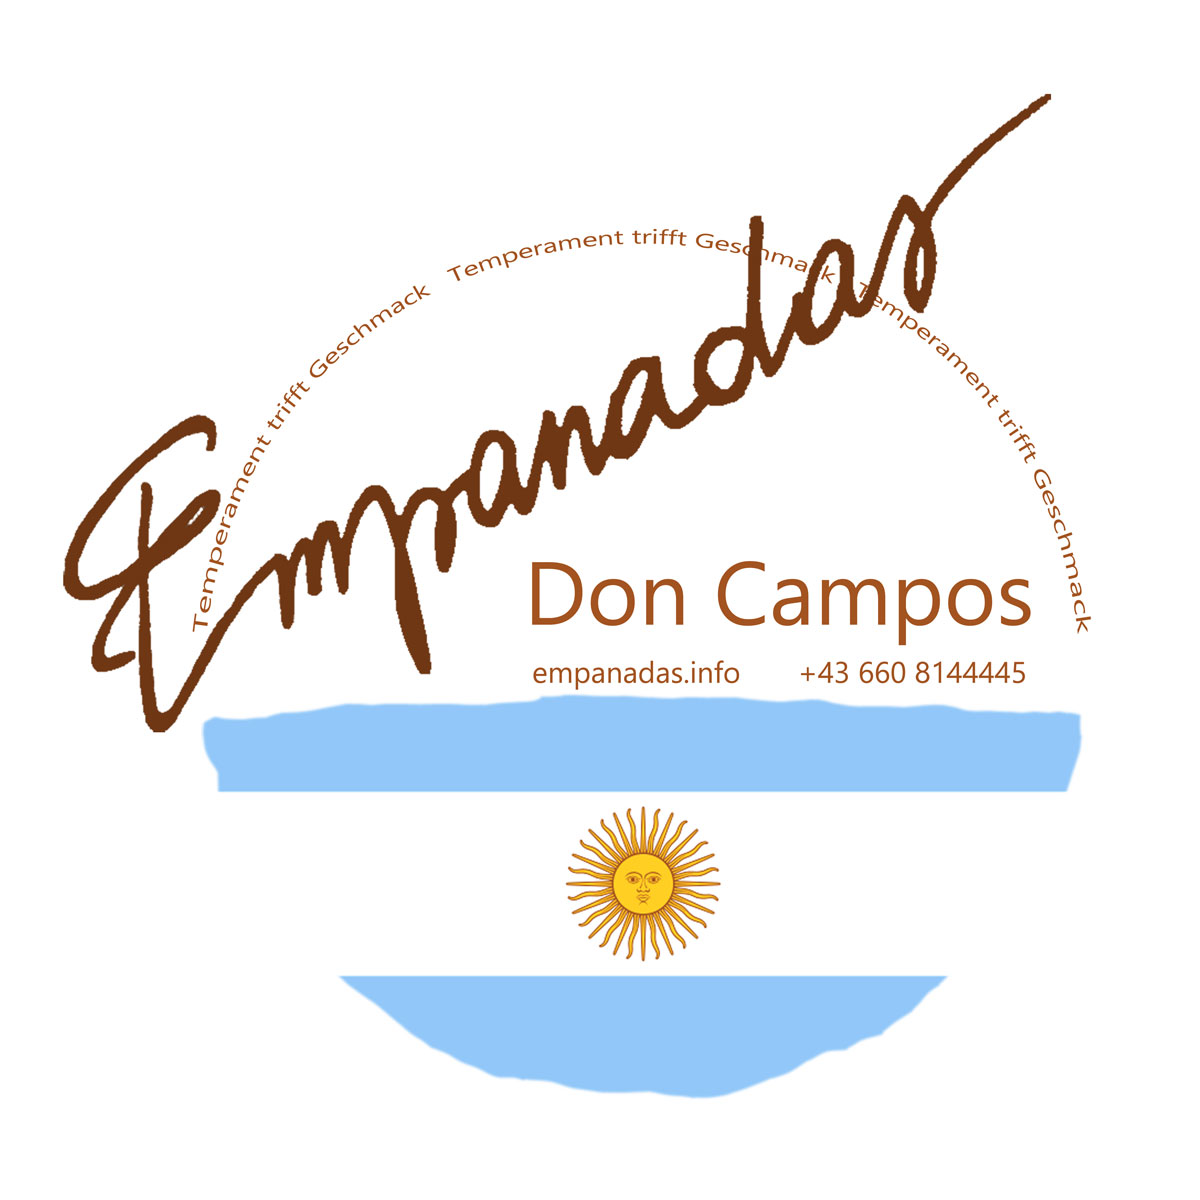 Empanadas Don Campos - Südamerikanisches Fingerfood made in Göstling/Ybbs